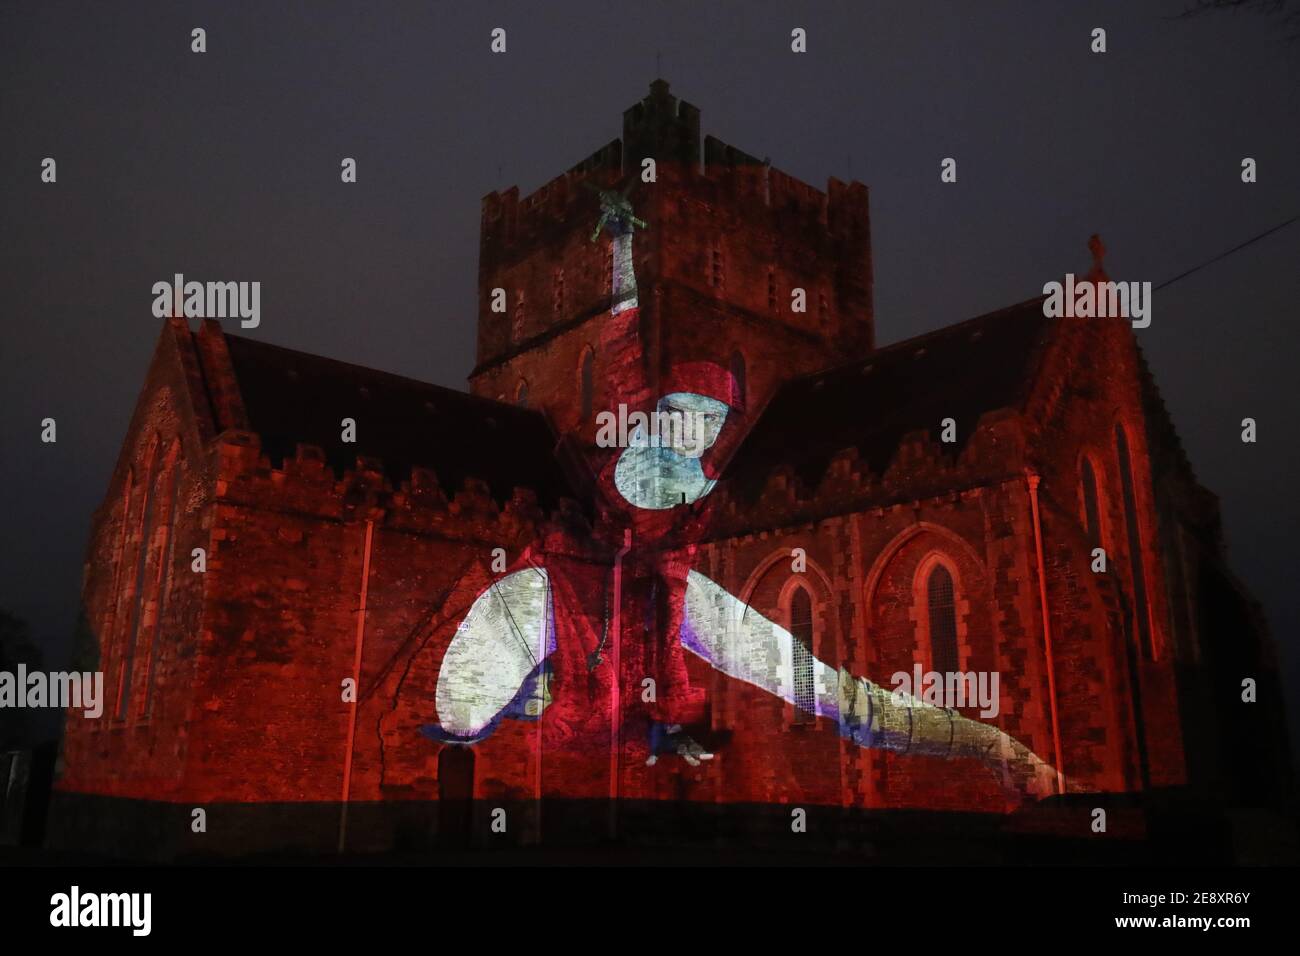 Eine Nonne in Rot mit einem Kruzifix, das im Rahmen der Herstory Light Show auf der St. Brigid's Cathedral, Kildare, am St. BrigidÕs Day projiziert wird, als Wahrzeichen in ganz Irland beleuchtet wurden, um Überlebende von Mutter- und Babyhäusern zu ehren, als Teil einer Veranstaltung zum St. Brigid's Day. Bilddatum: Montag, 1. Februar 2021. Stockfoto